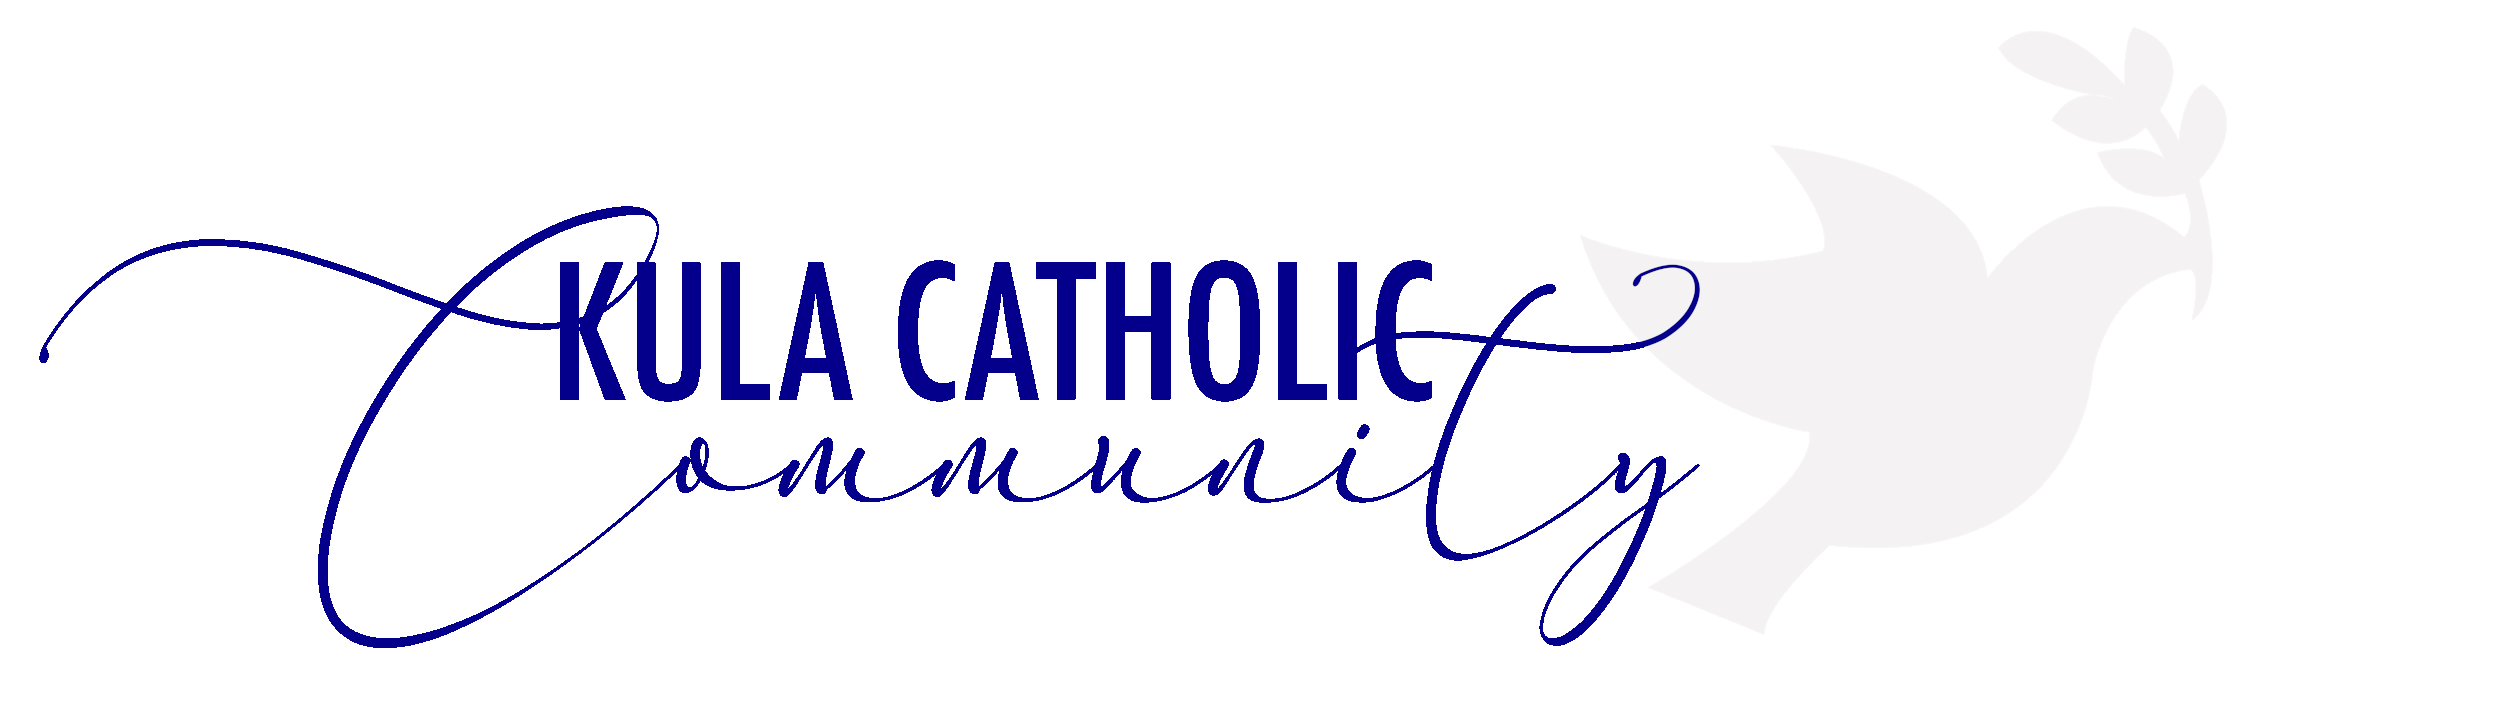 Kula Catholic Community 